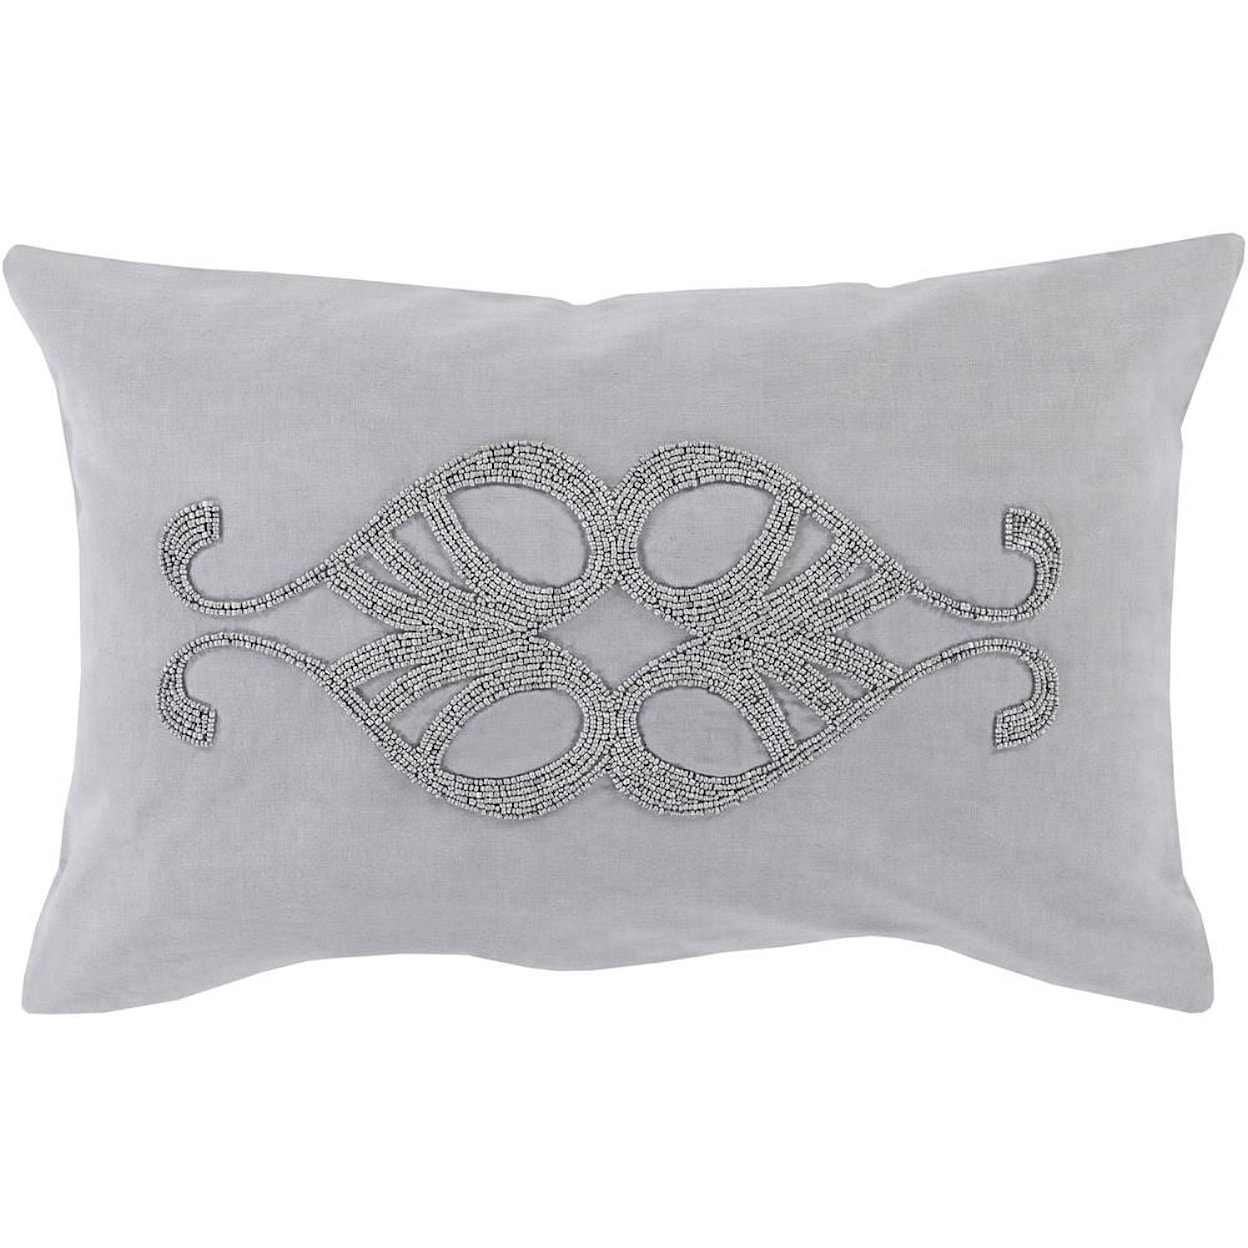 Surya Pillows 13" x 20" Decorative Pillow